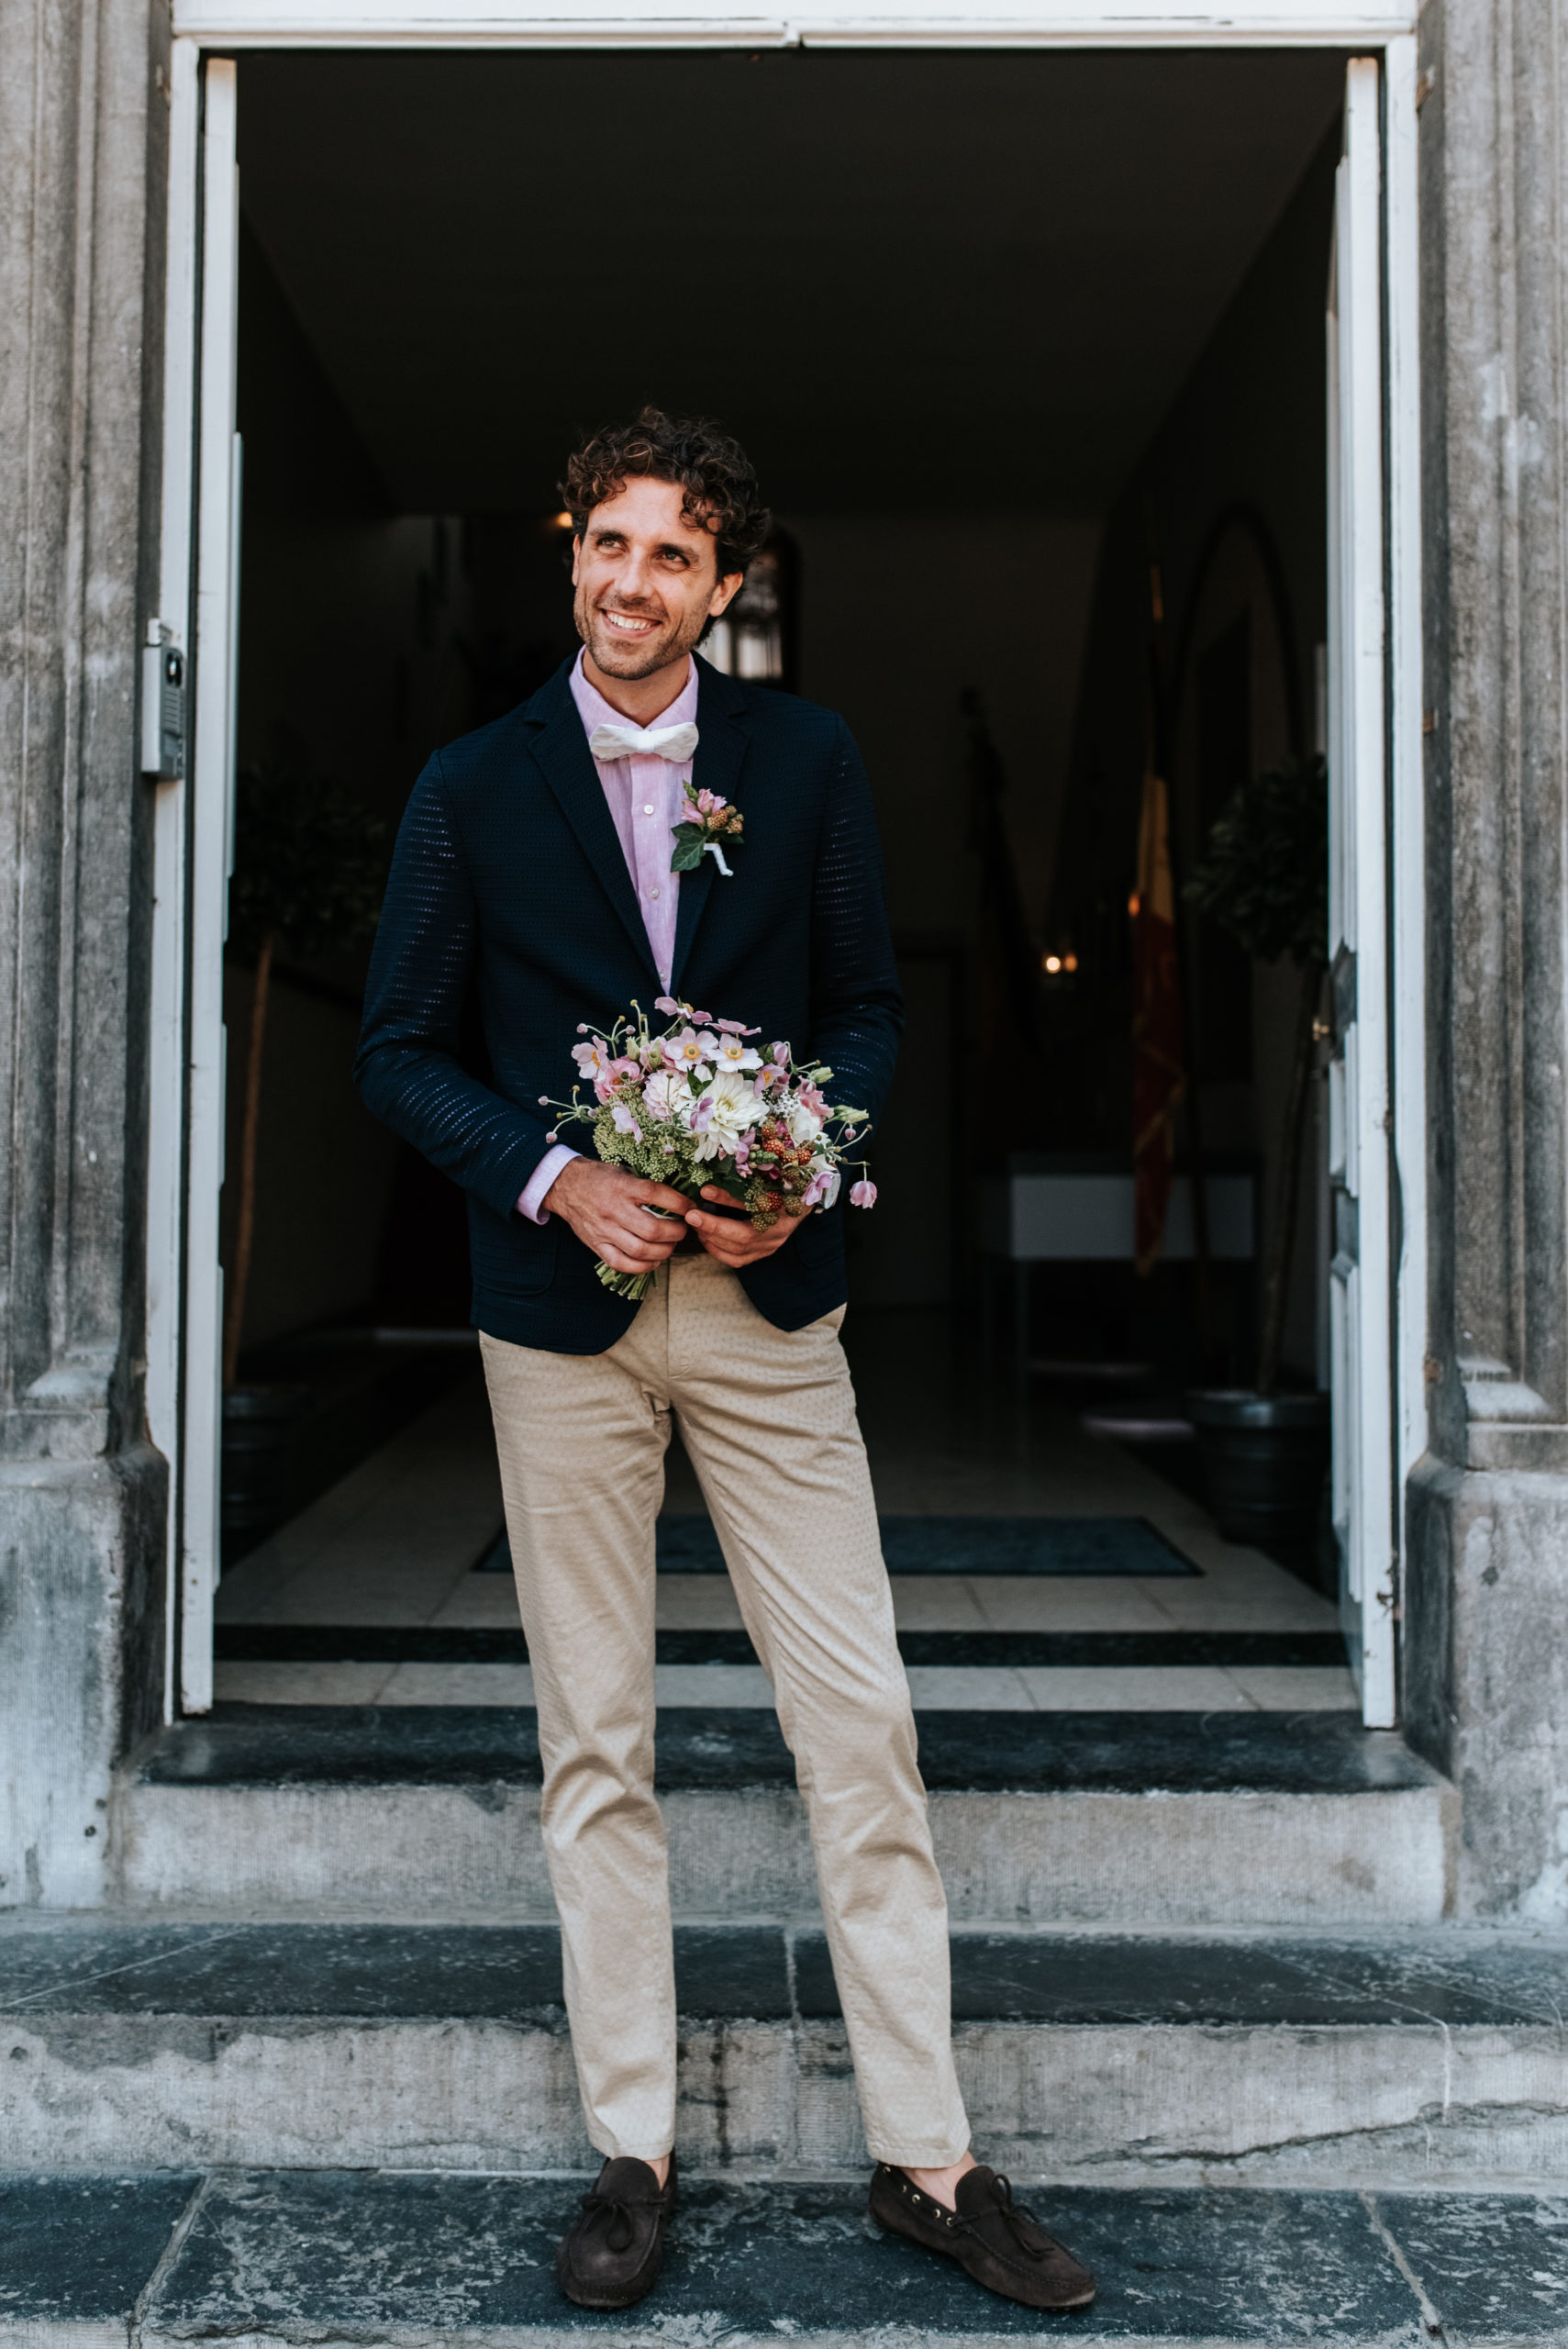 Belgian wedding photographer